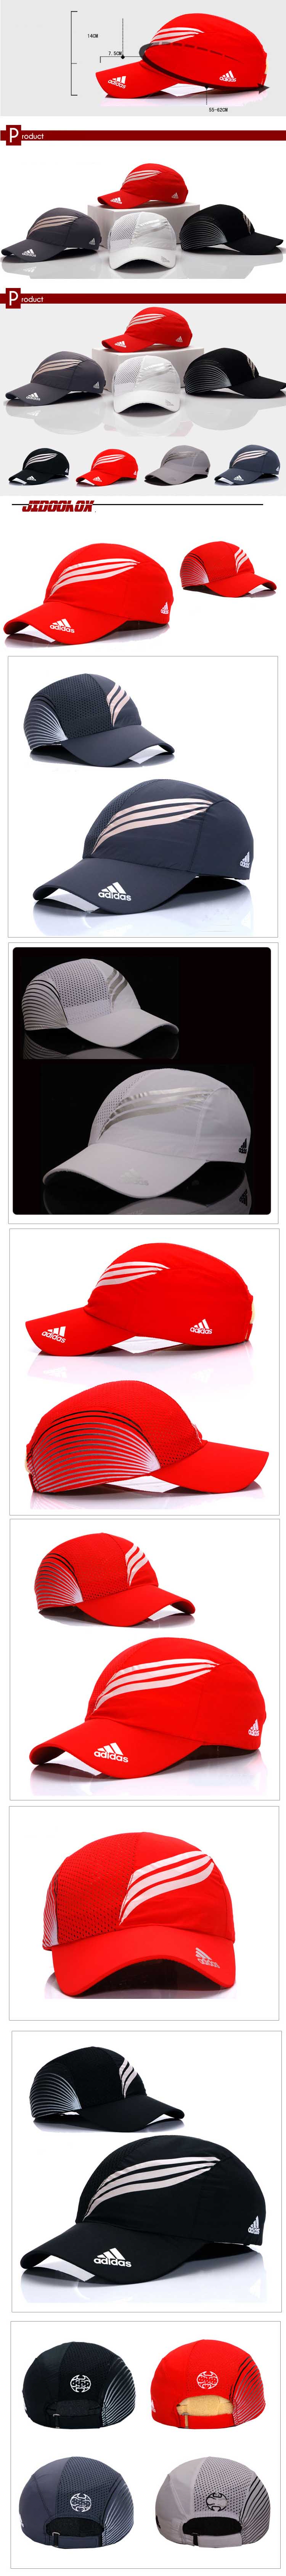 jual topi pria branded merk adidas non original, temukan koleksi topi pria branded terlengkap dan model terbaru hanya di store.pakaianfashionpria.com